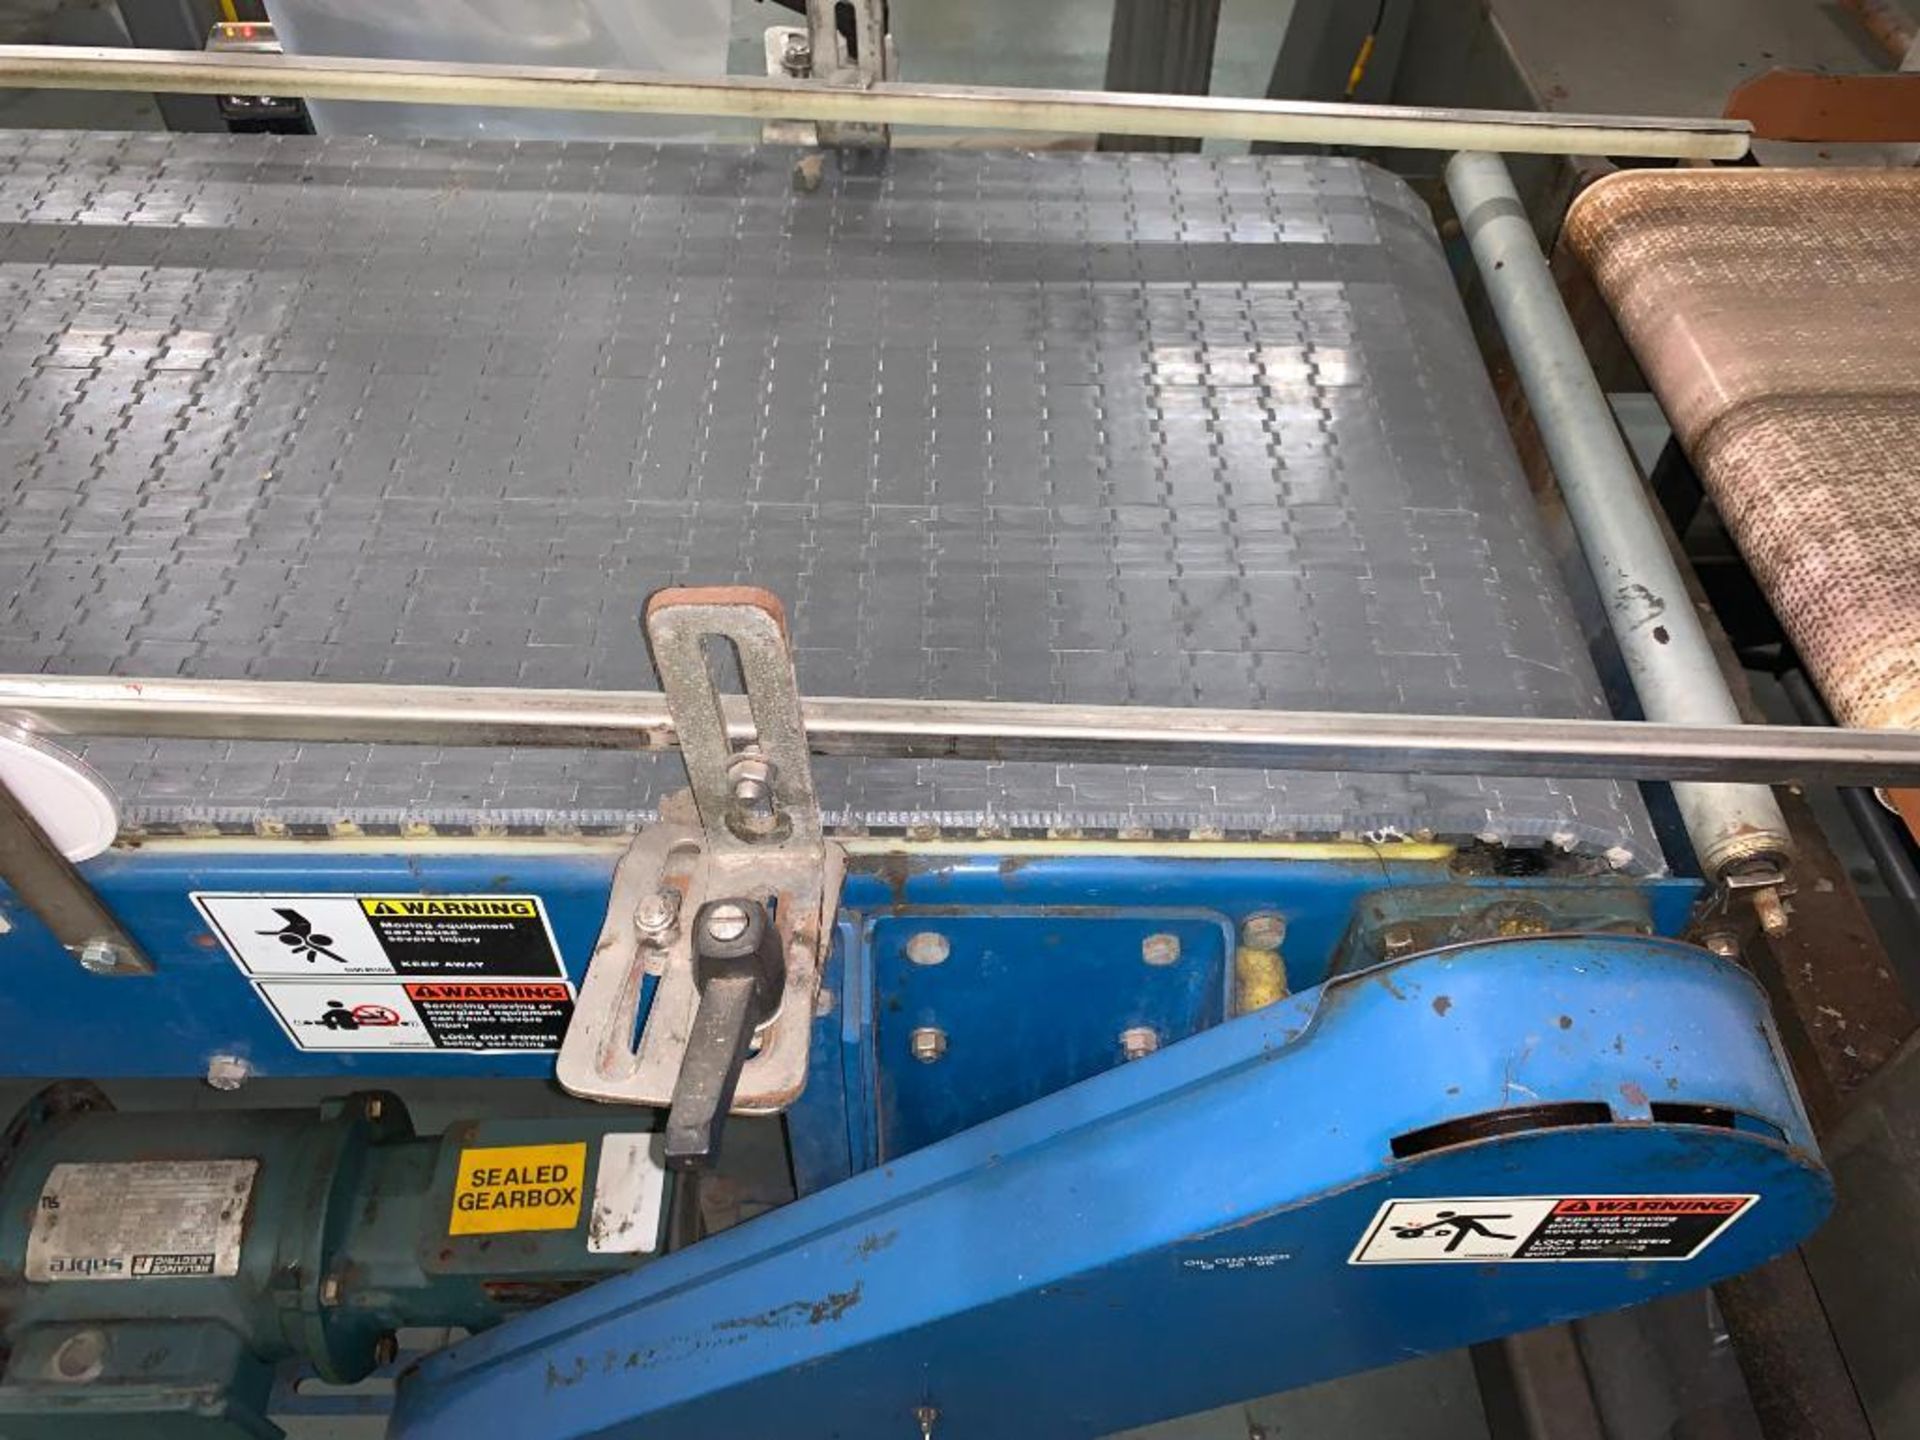 mild steel conveyor, 76 in. x 18 in. x 35 in., gray plastic belt - Image 6 of 9